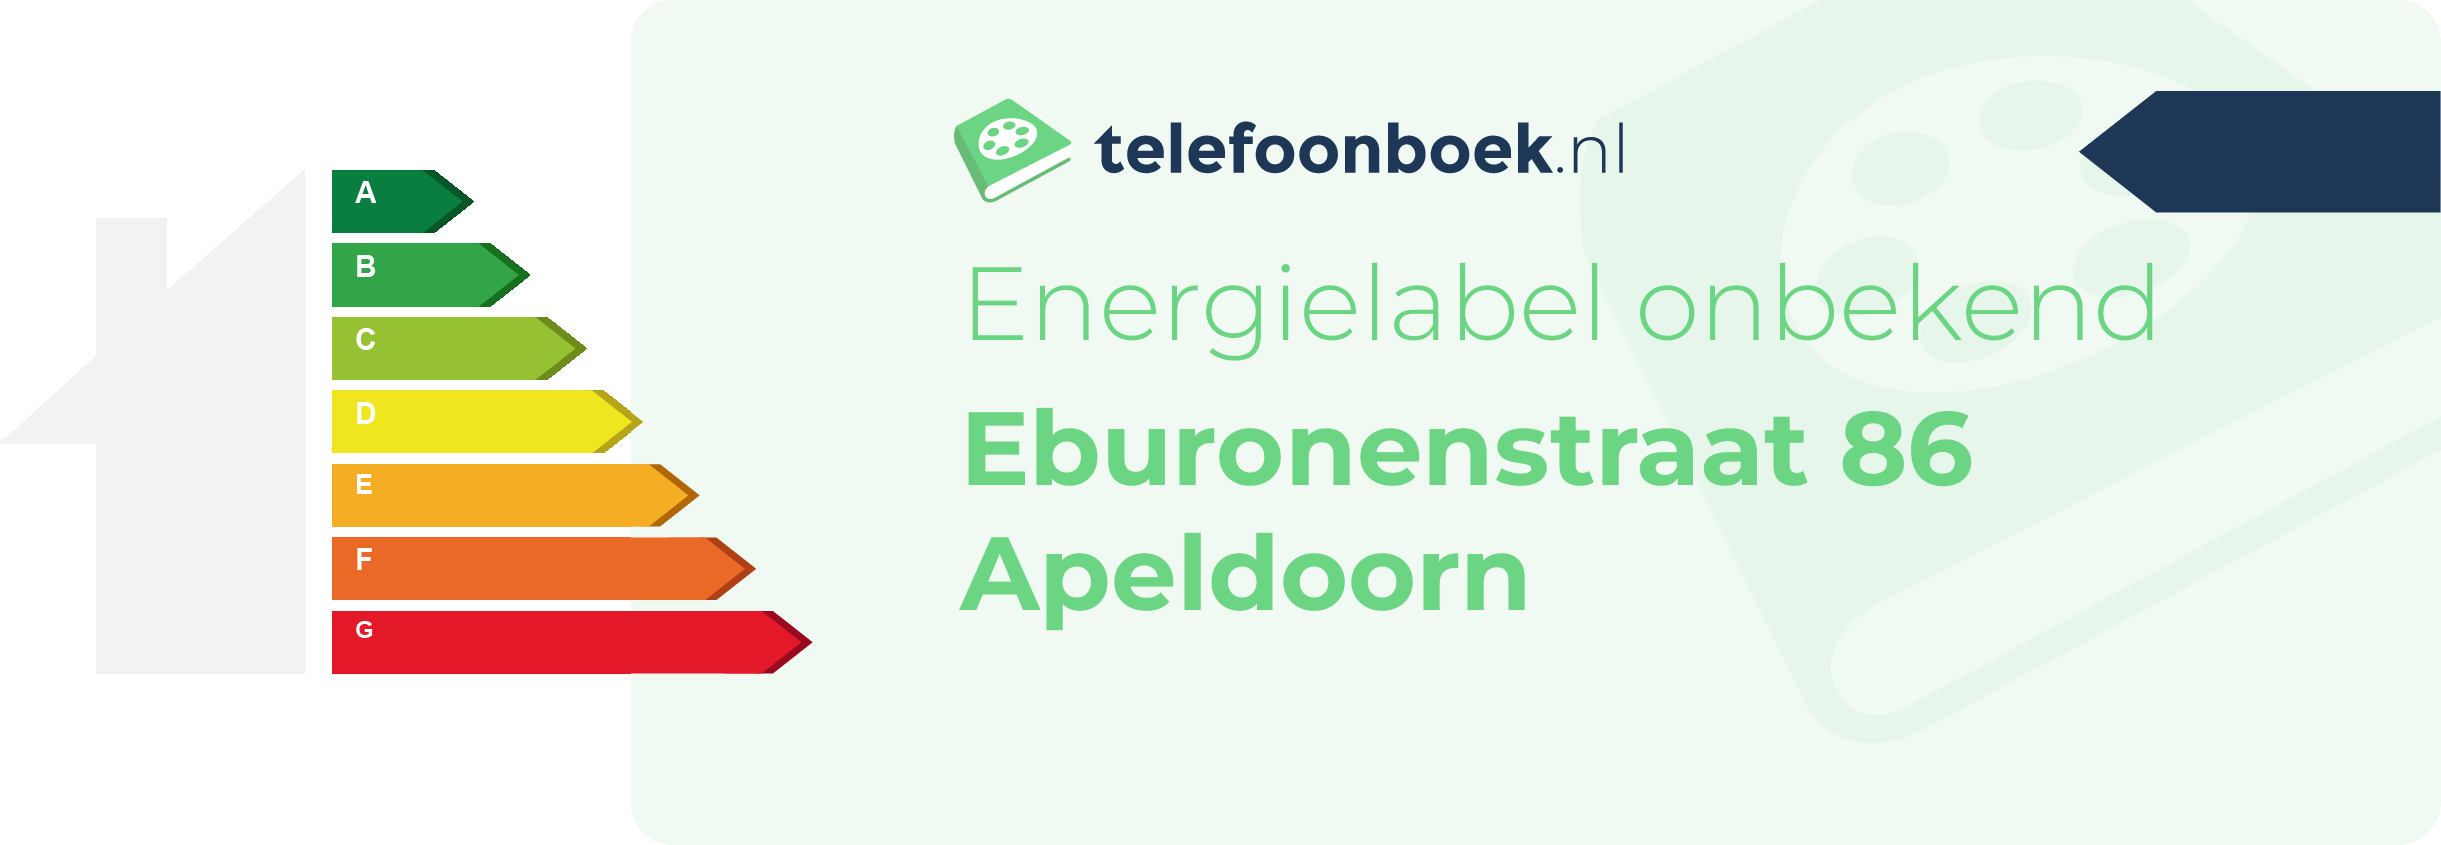 Energielabel Eburonenstraat 86 Apeldoorn